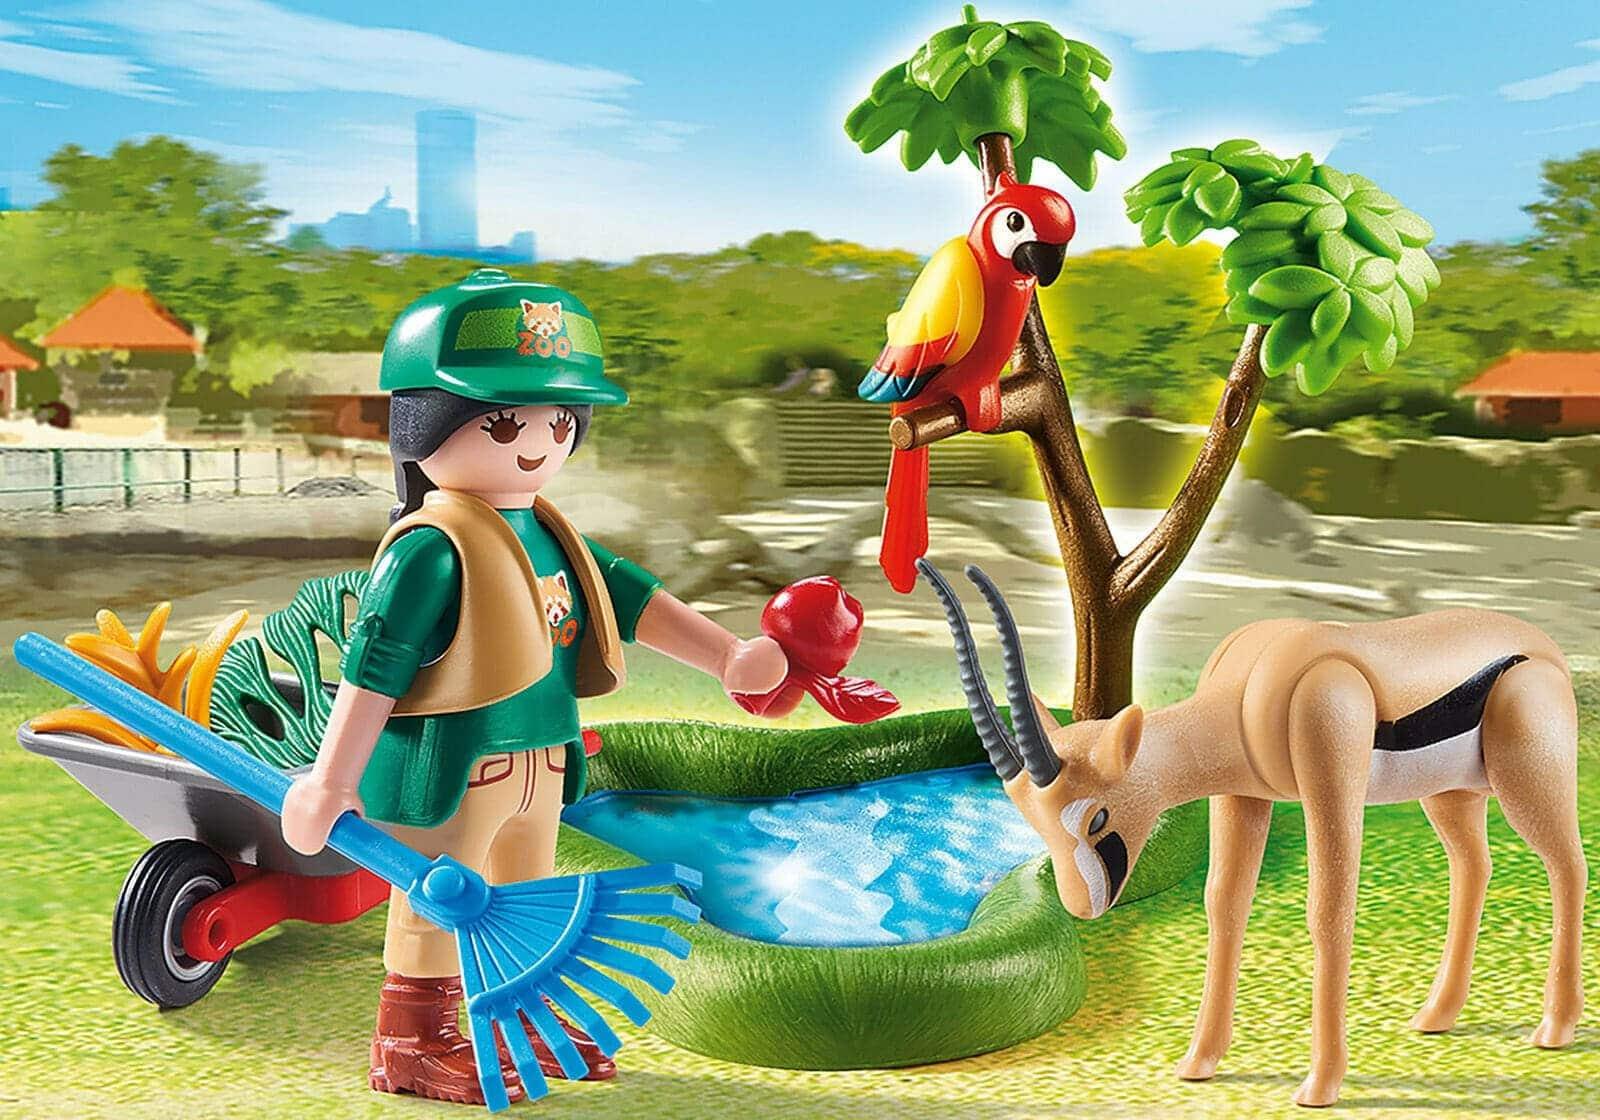 Playmobil Set do Jardim Zoológico - Brincatoys